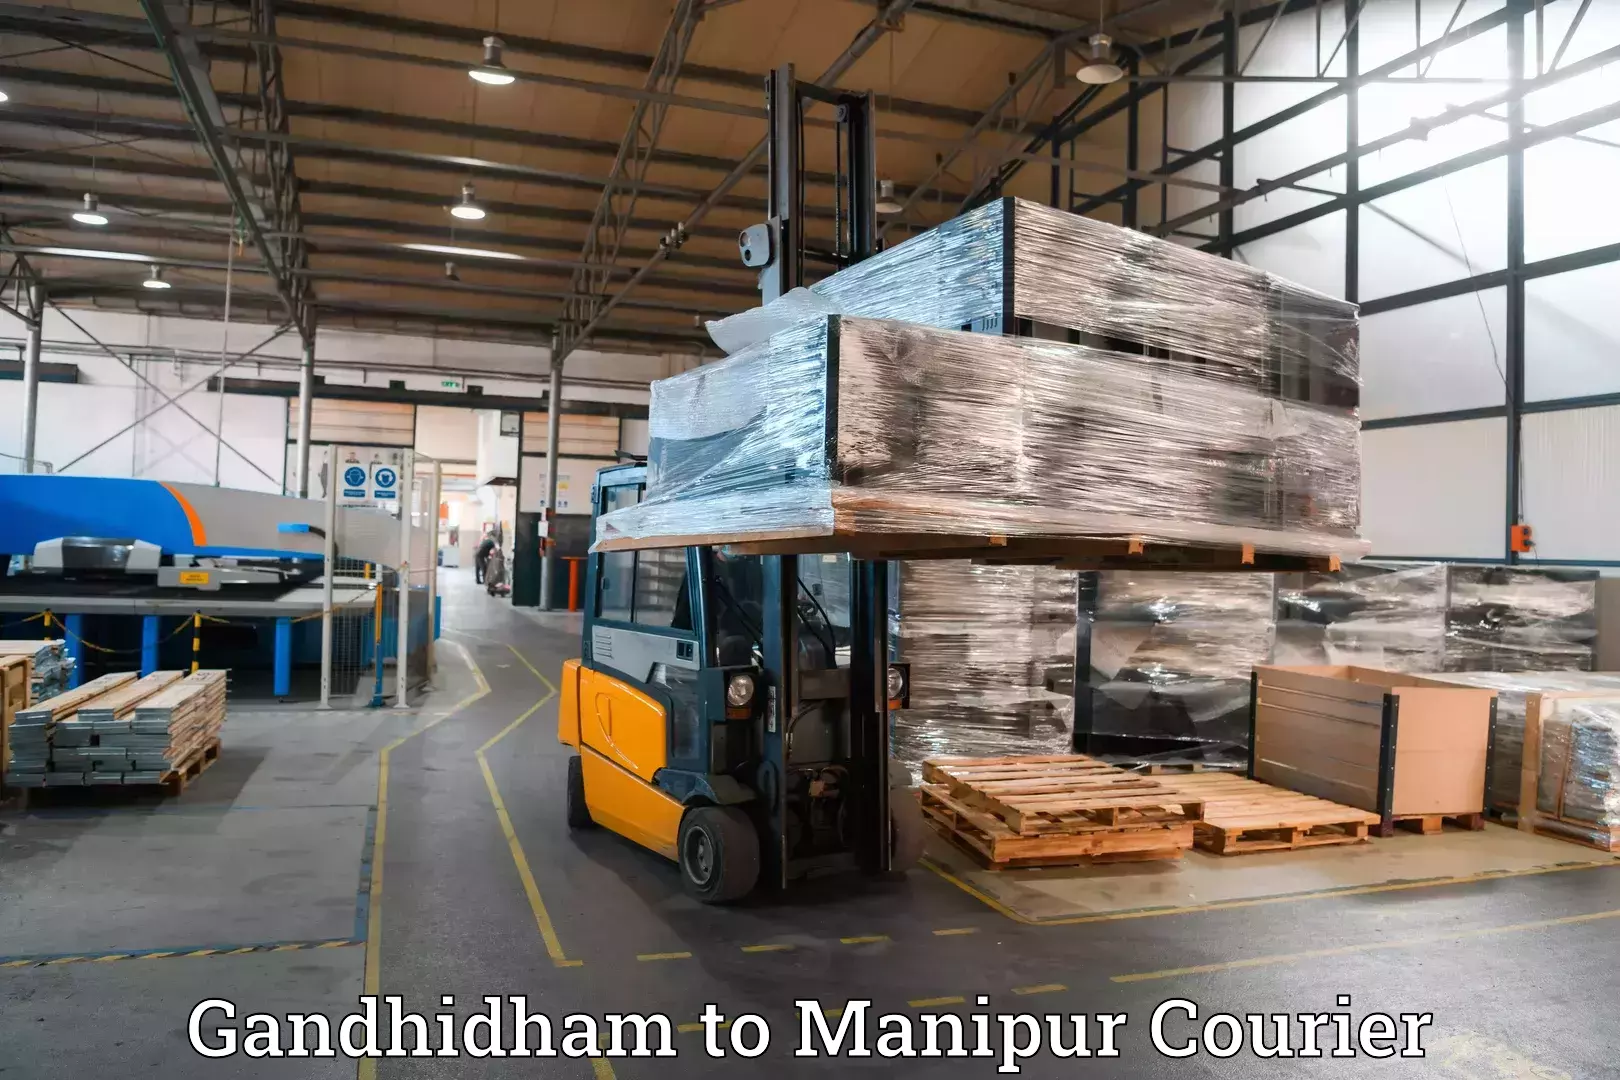 Luggage transport service Gandhidham to Moirang